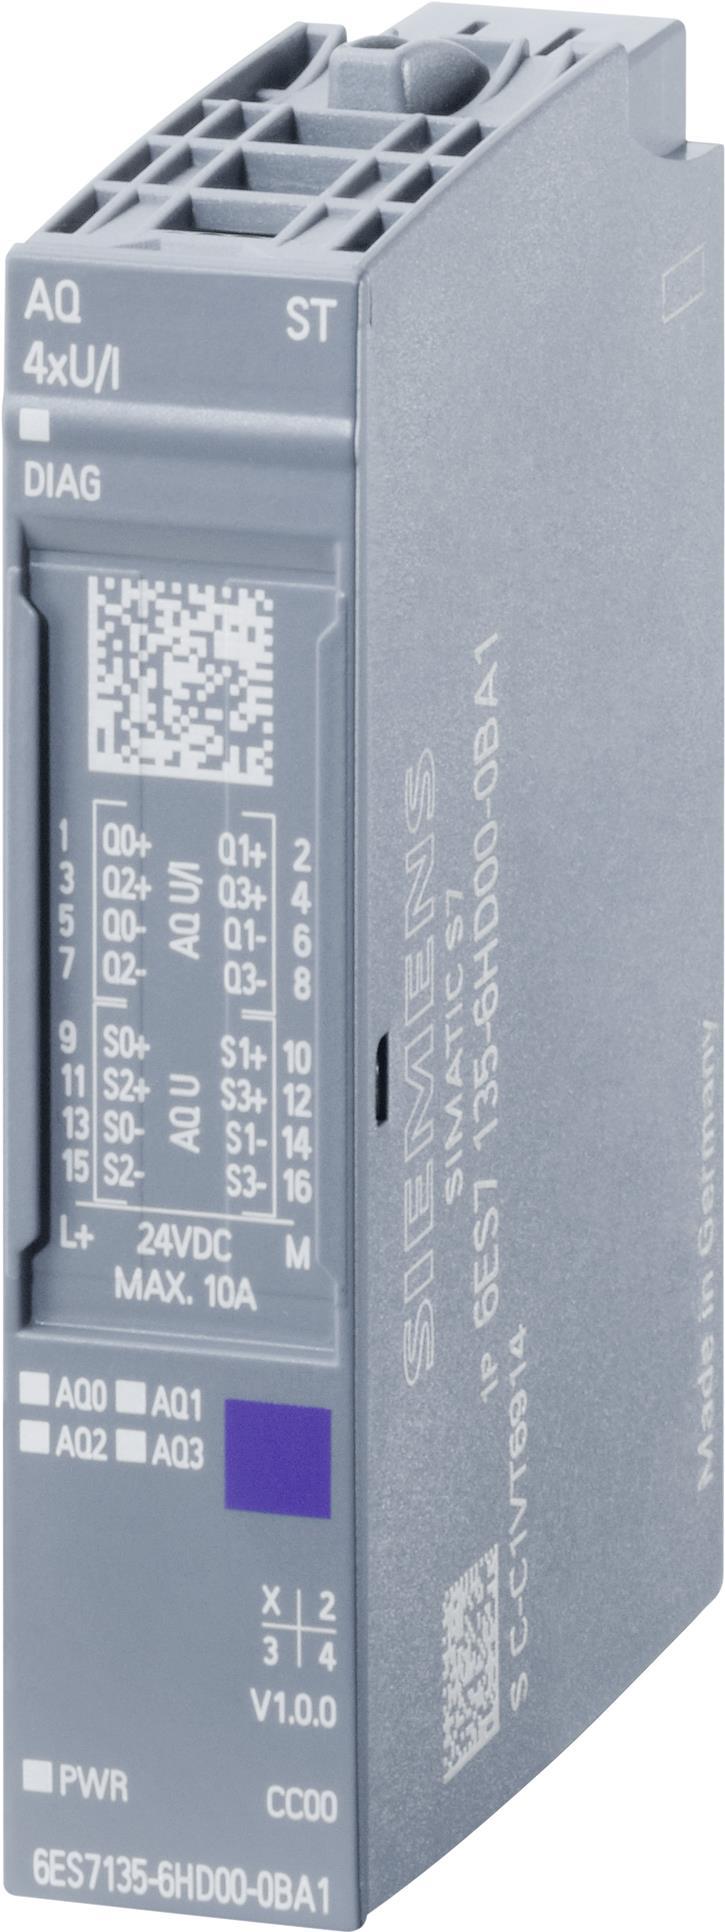 Siemens 6ES7135-6HD00-0BA1 Digital & Analog I/O Modul (6ES7135-6HD00-0BA1) (geöffnet)